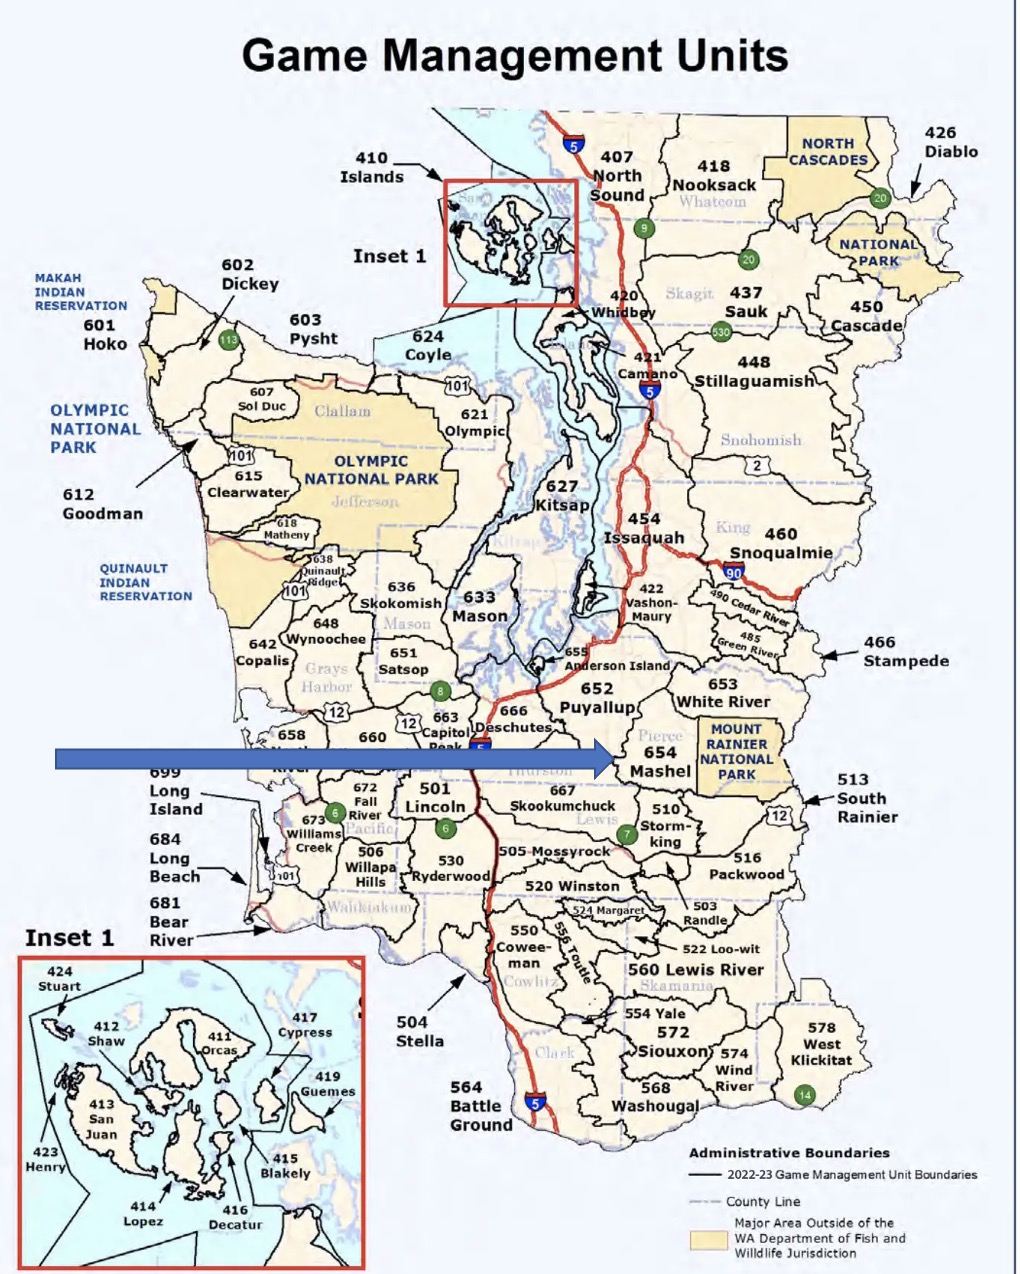 GMU Map 654 - Mashel